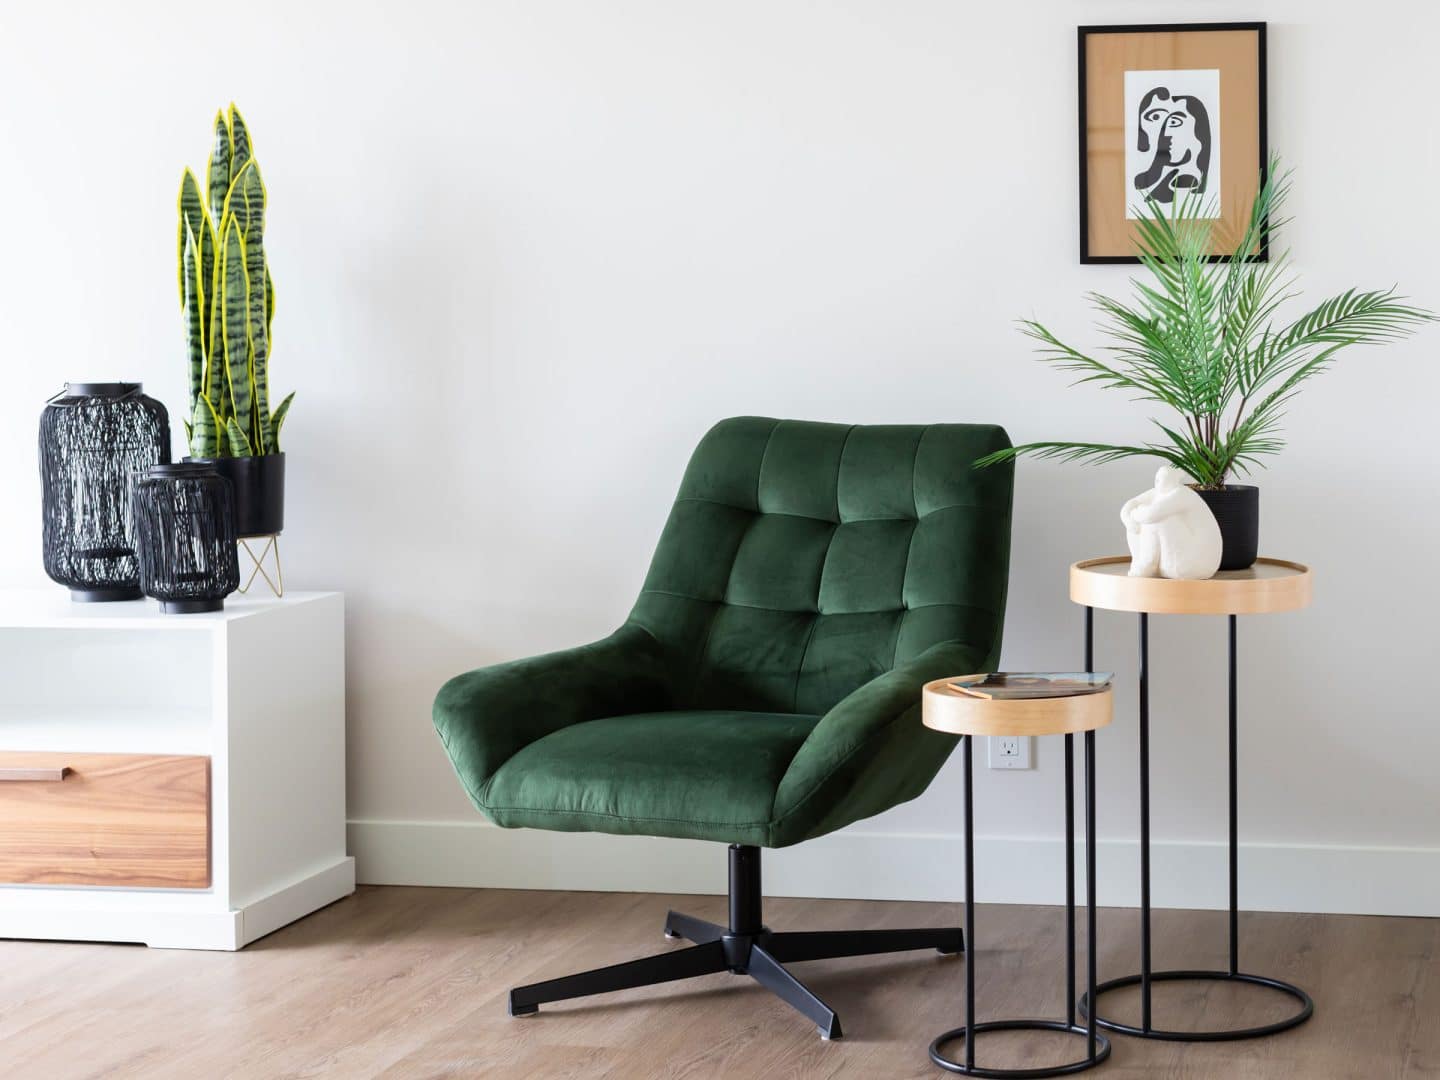 un espace lecture, sans sujet. Une chaise confortable verte avec des plantes.